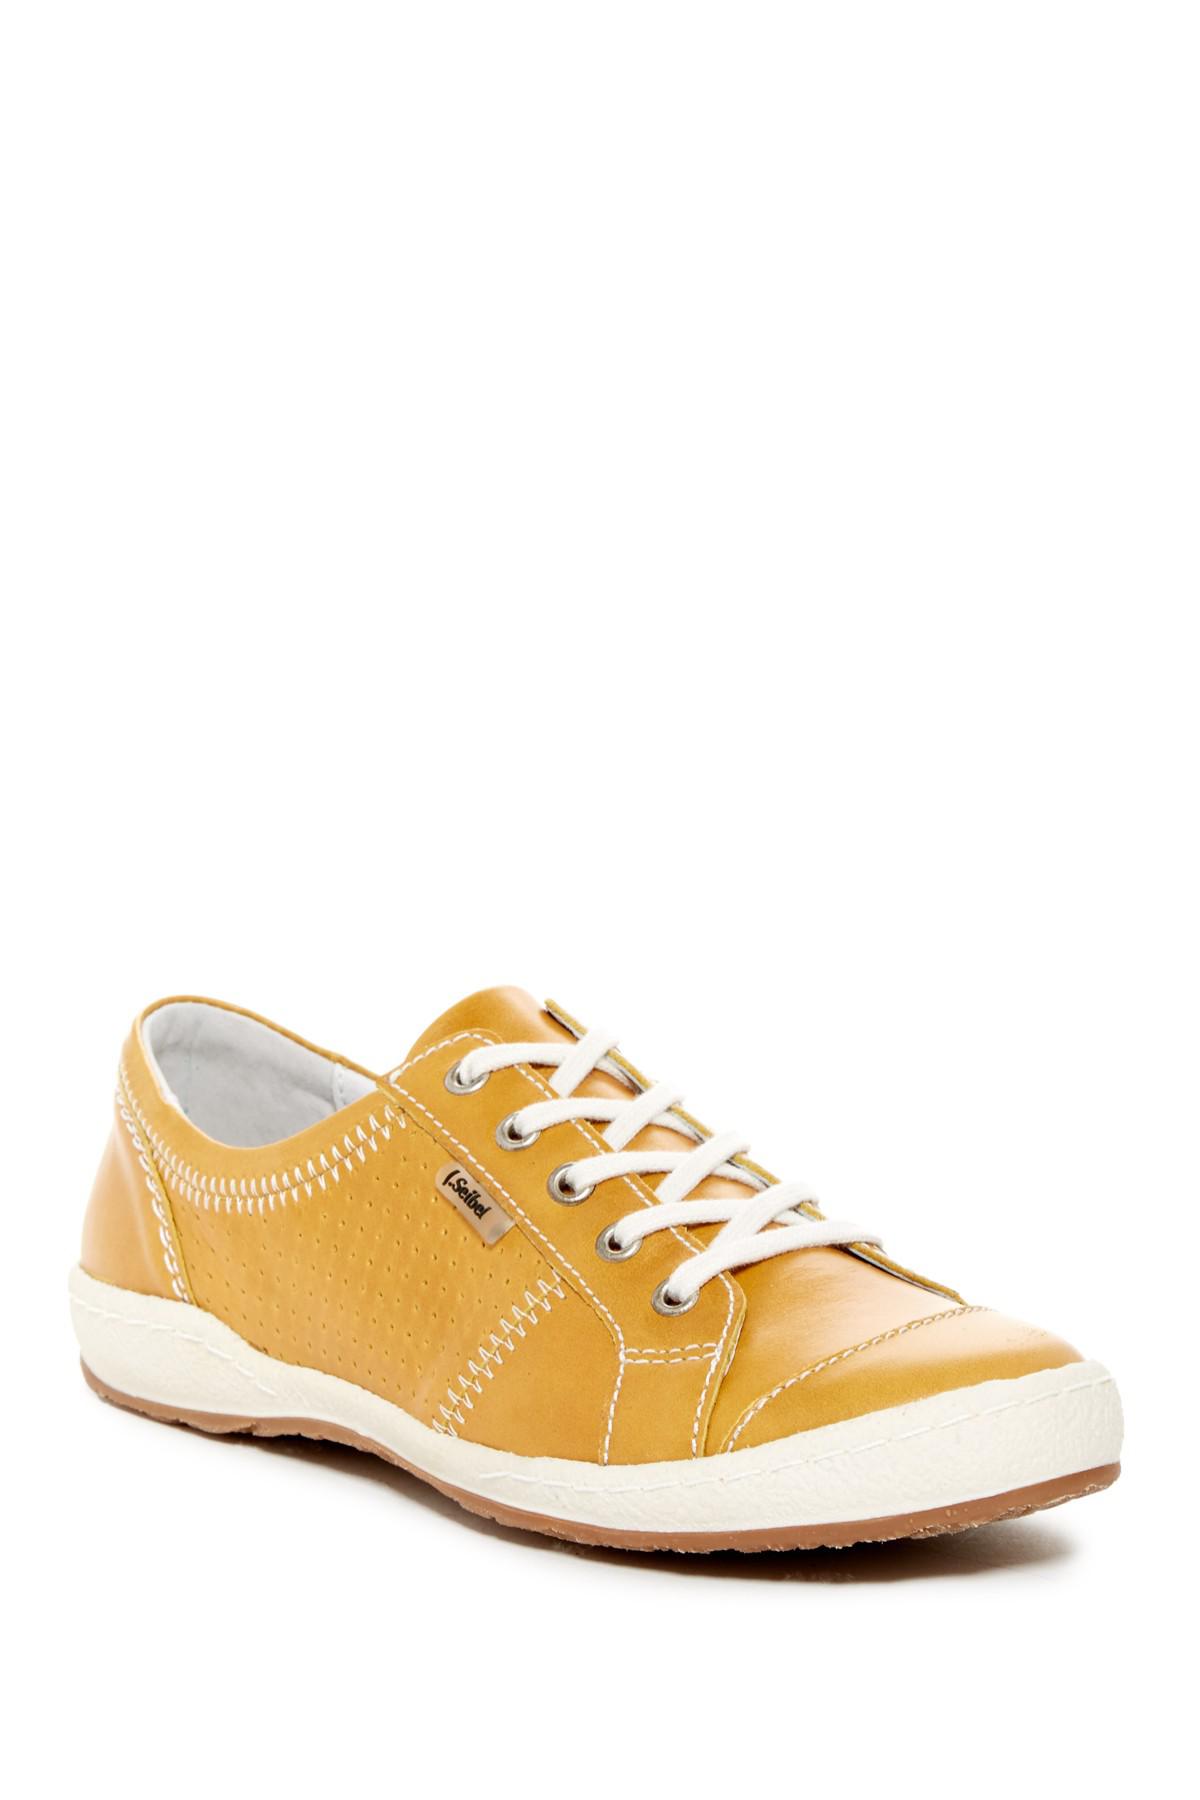 Josef Seibel Leather Caspian Sneaker in Yellow | Lyst